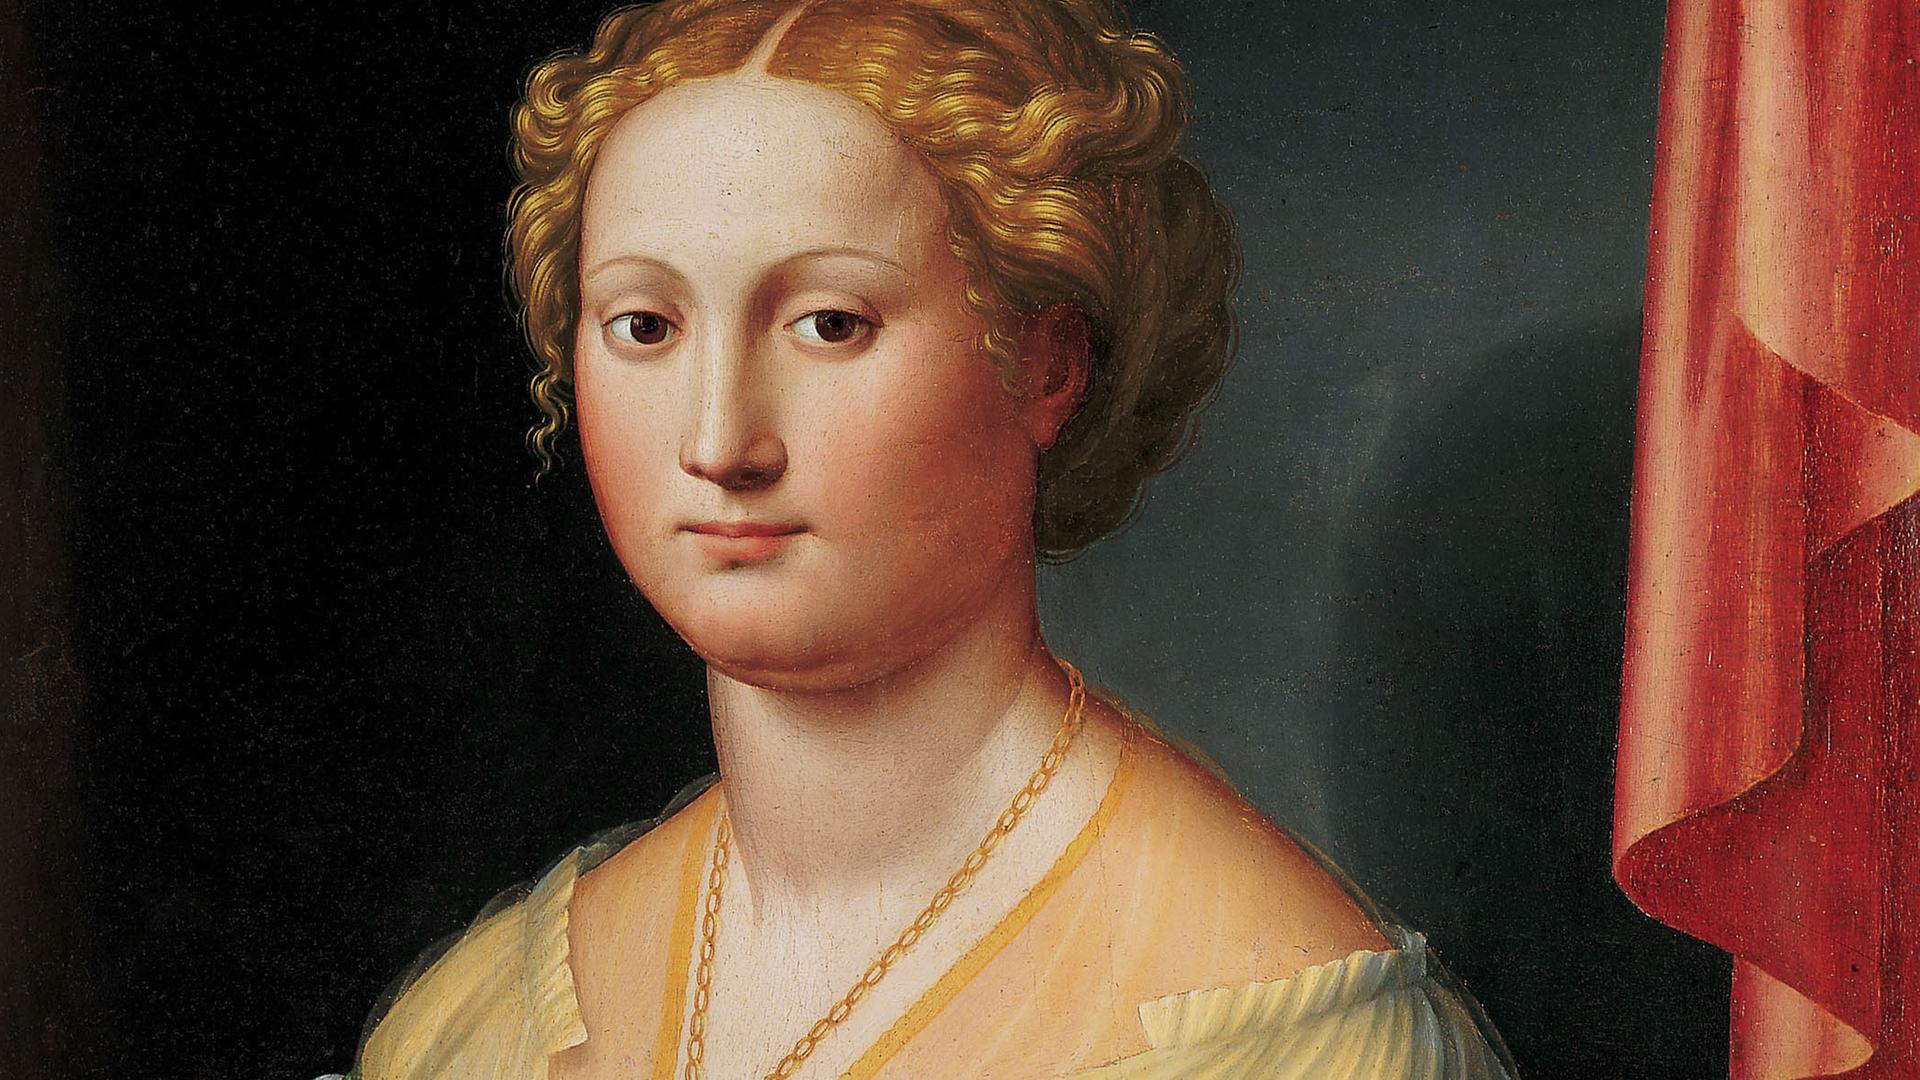 Das gemalte Porträt zeigt Vanozza de’ Cattanei im Stil der frühen Renaissance